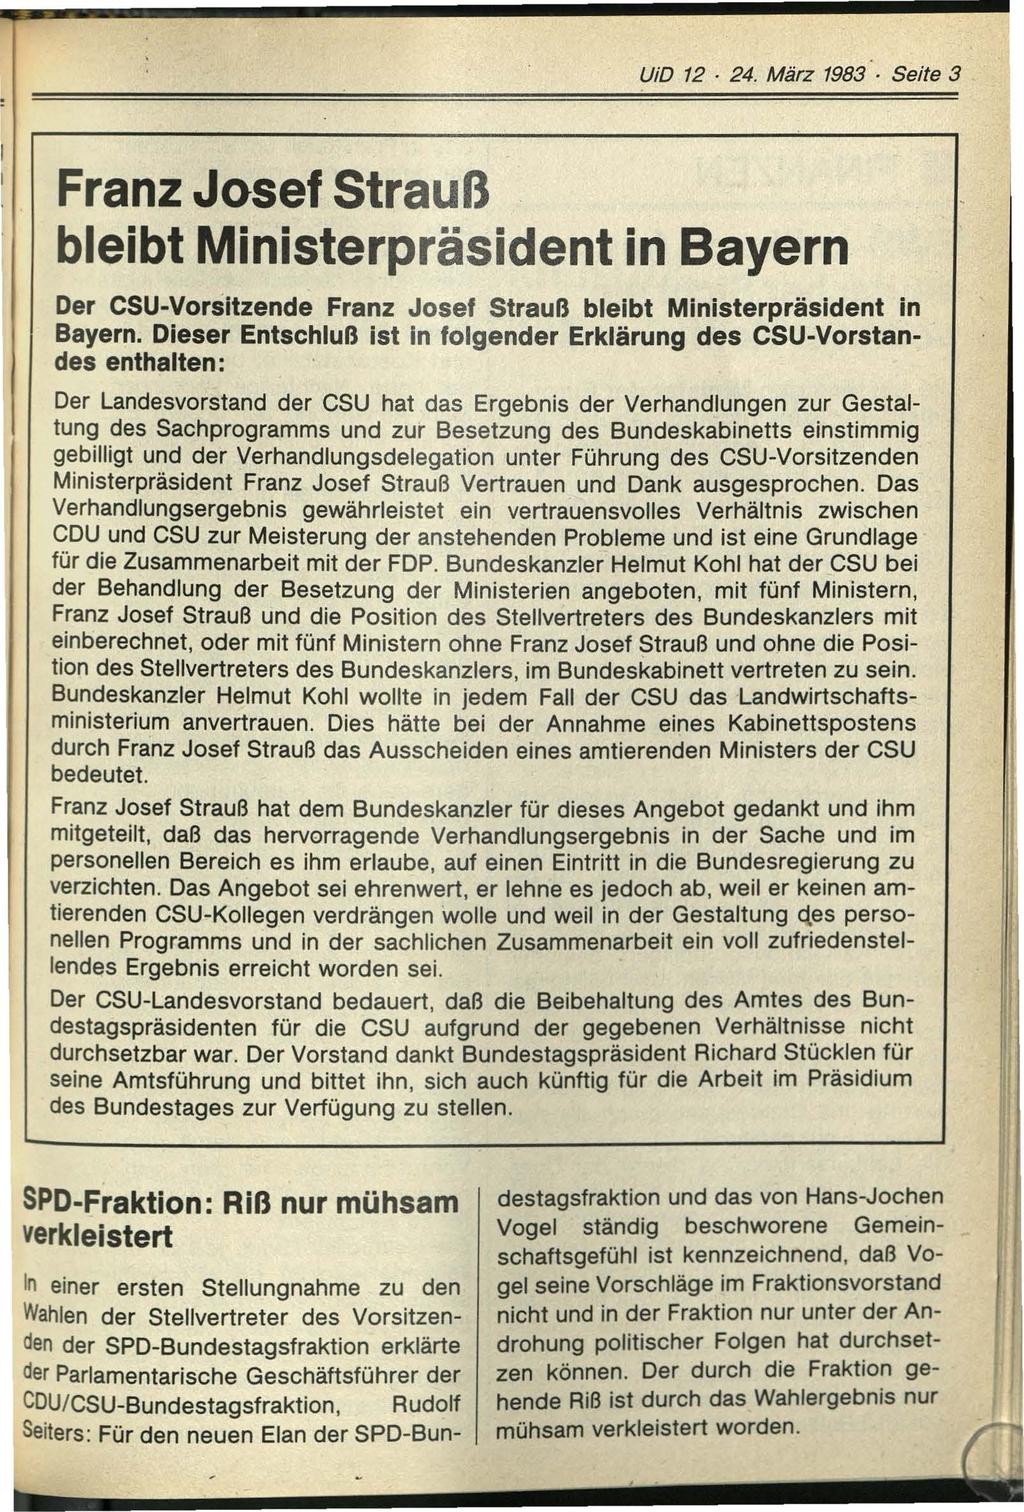 UiD 12 24. März 1983 Seite 3 I Franz Josef Strauß bleibt Ministerpräsident in Bayern Der CSU-Vorsitzende Franz Josef Strauß bleibt Ministerpräsident in Bayern.